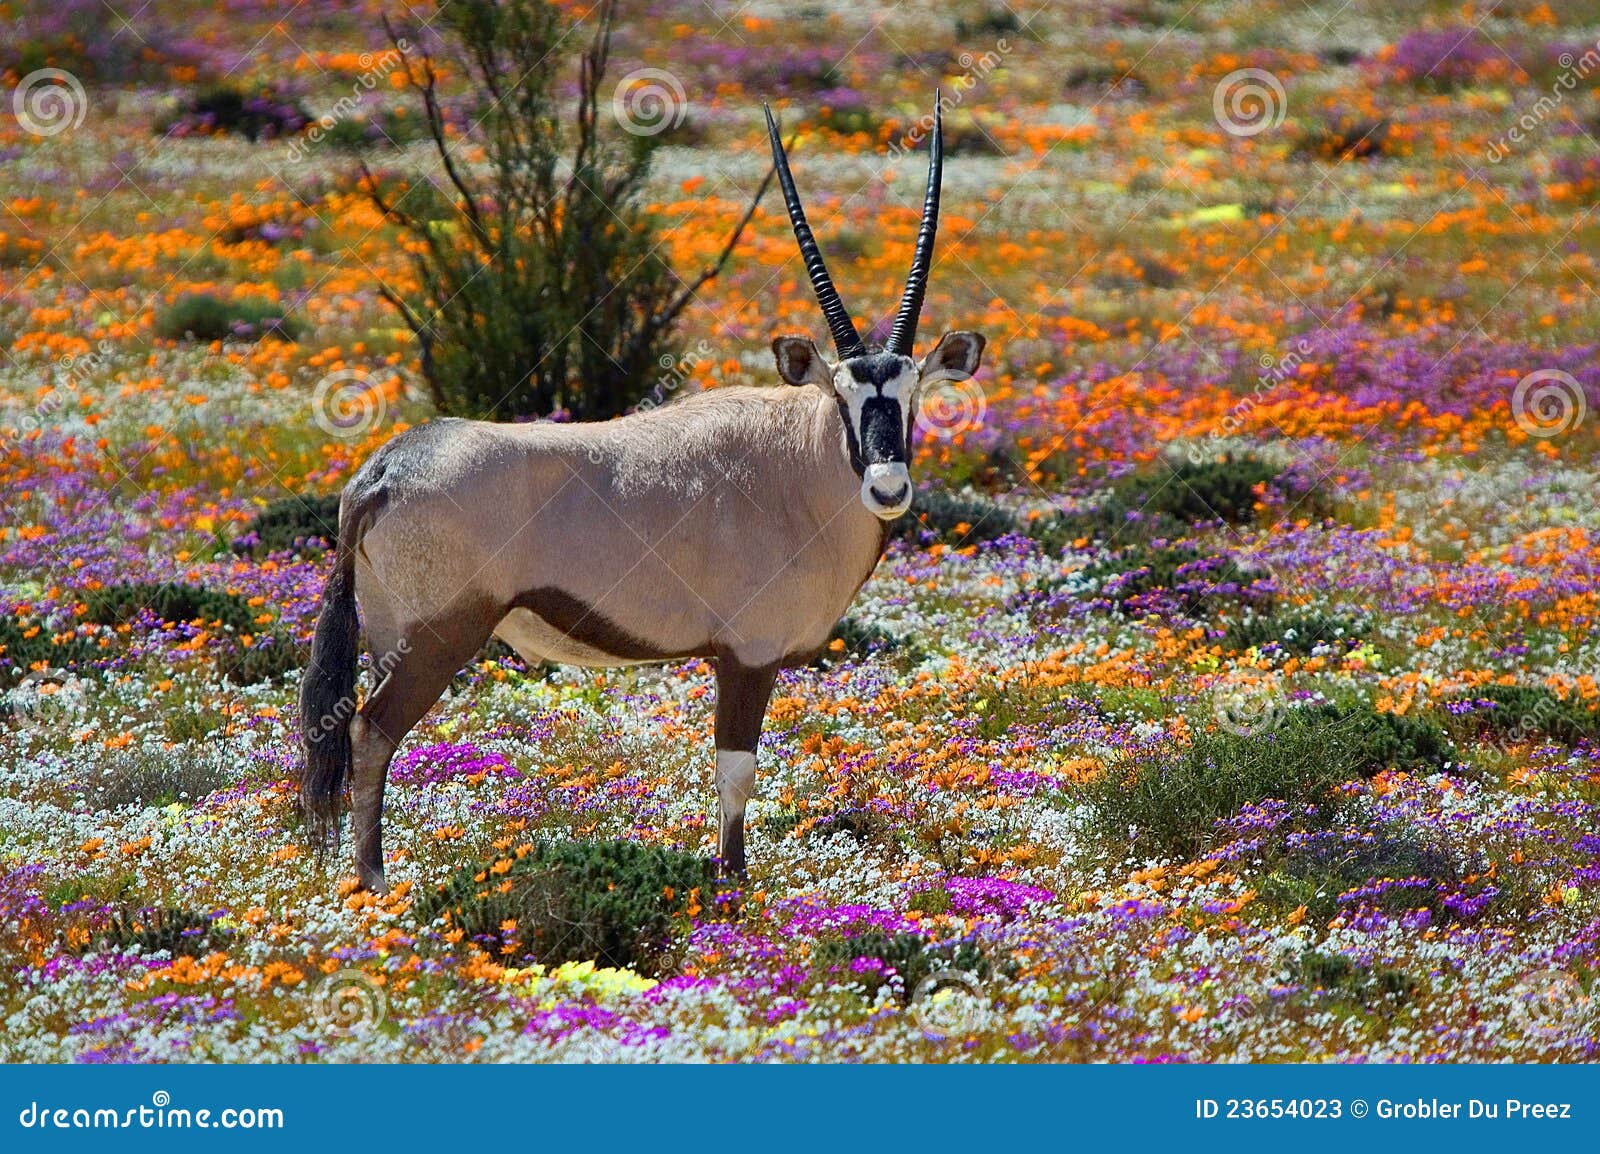 oryx in flowers